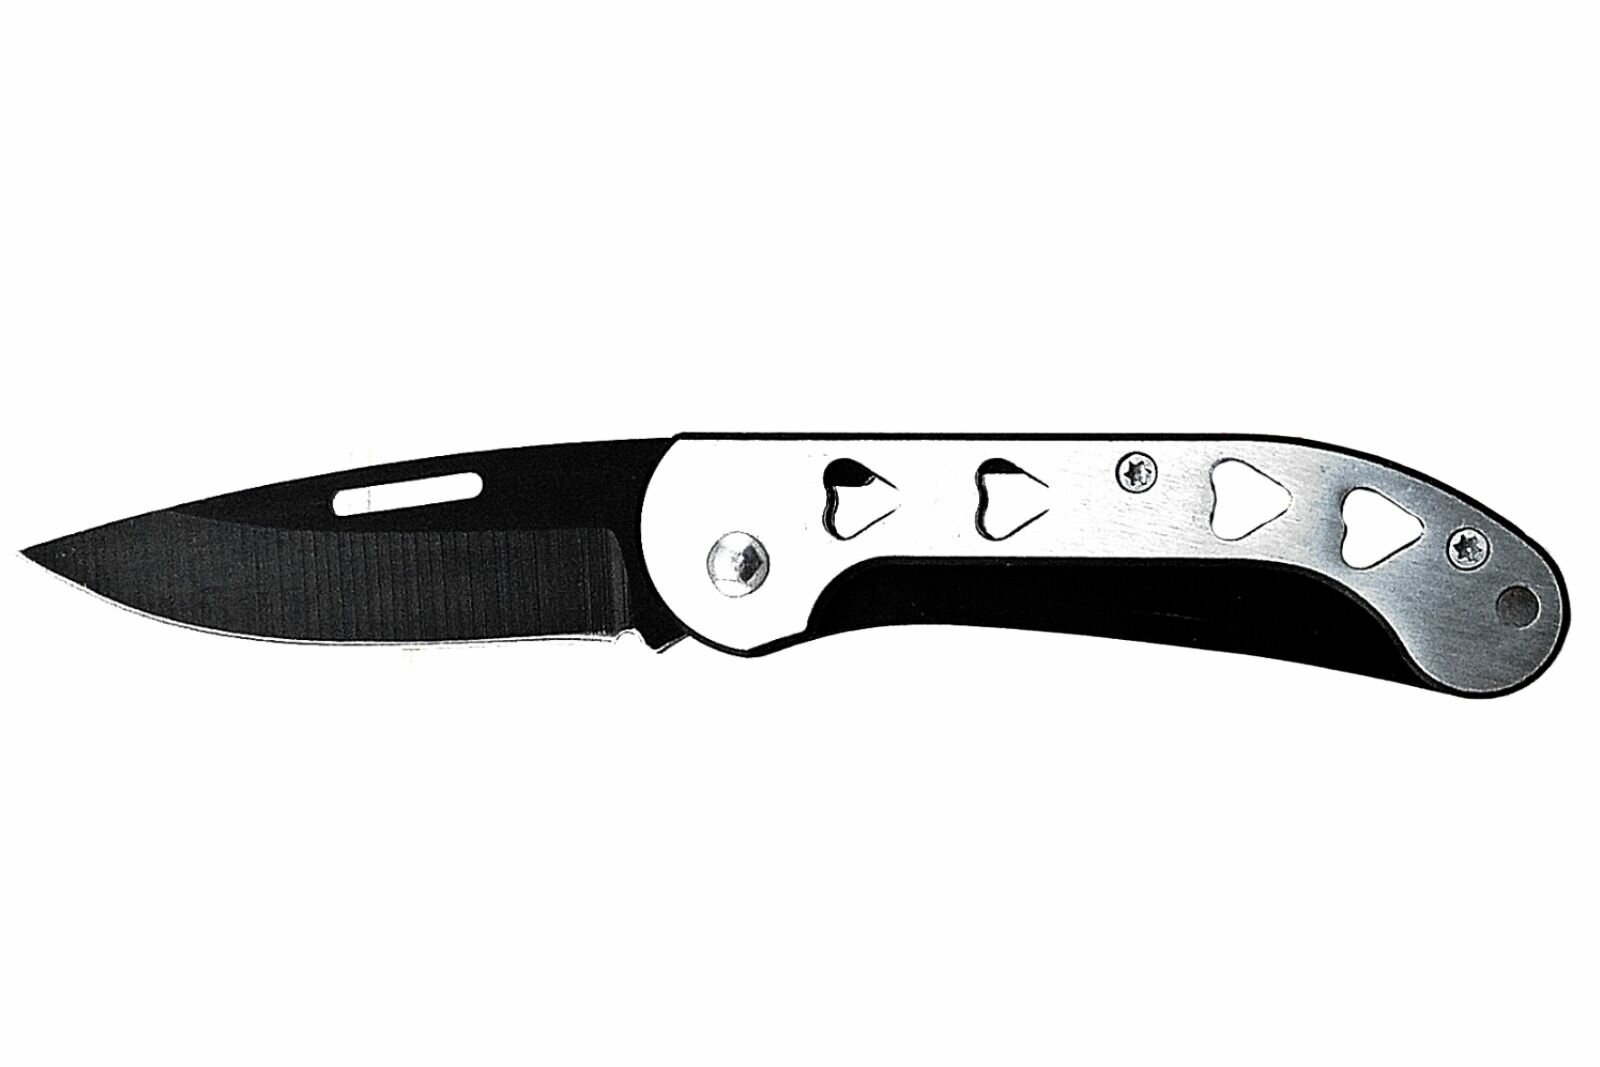 Складной нож Pirat FG08, длина клинка: 6,4 см